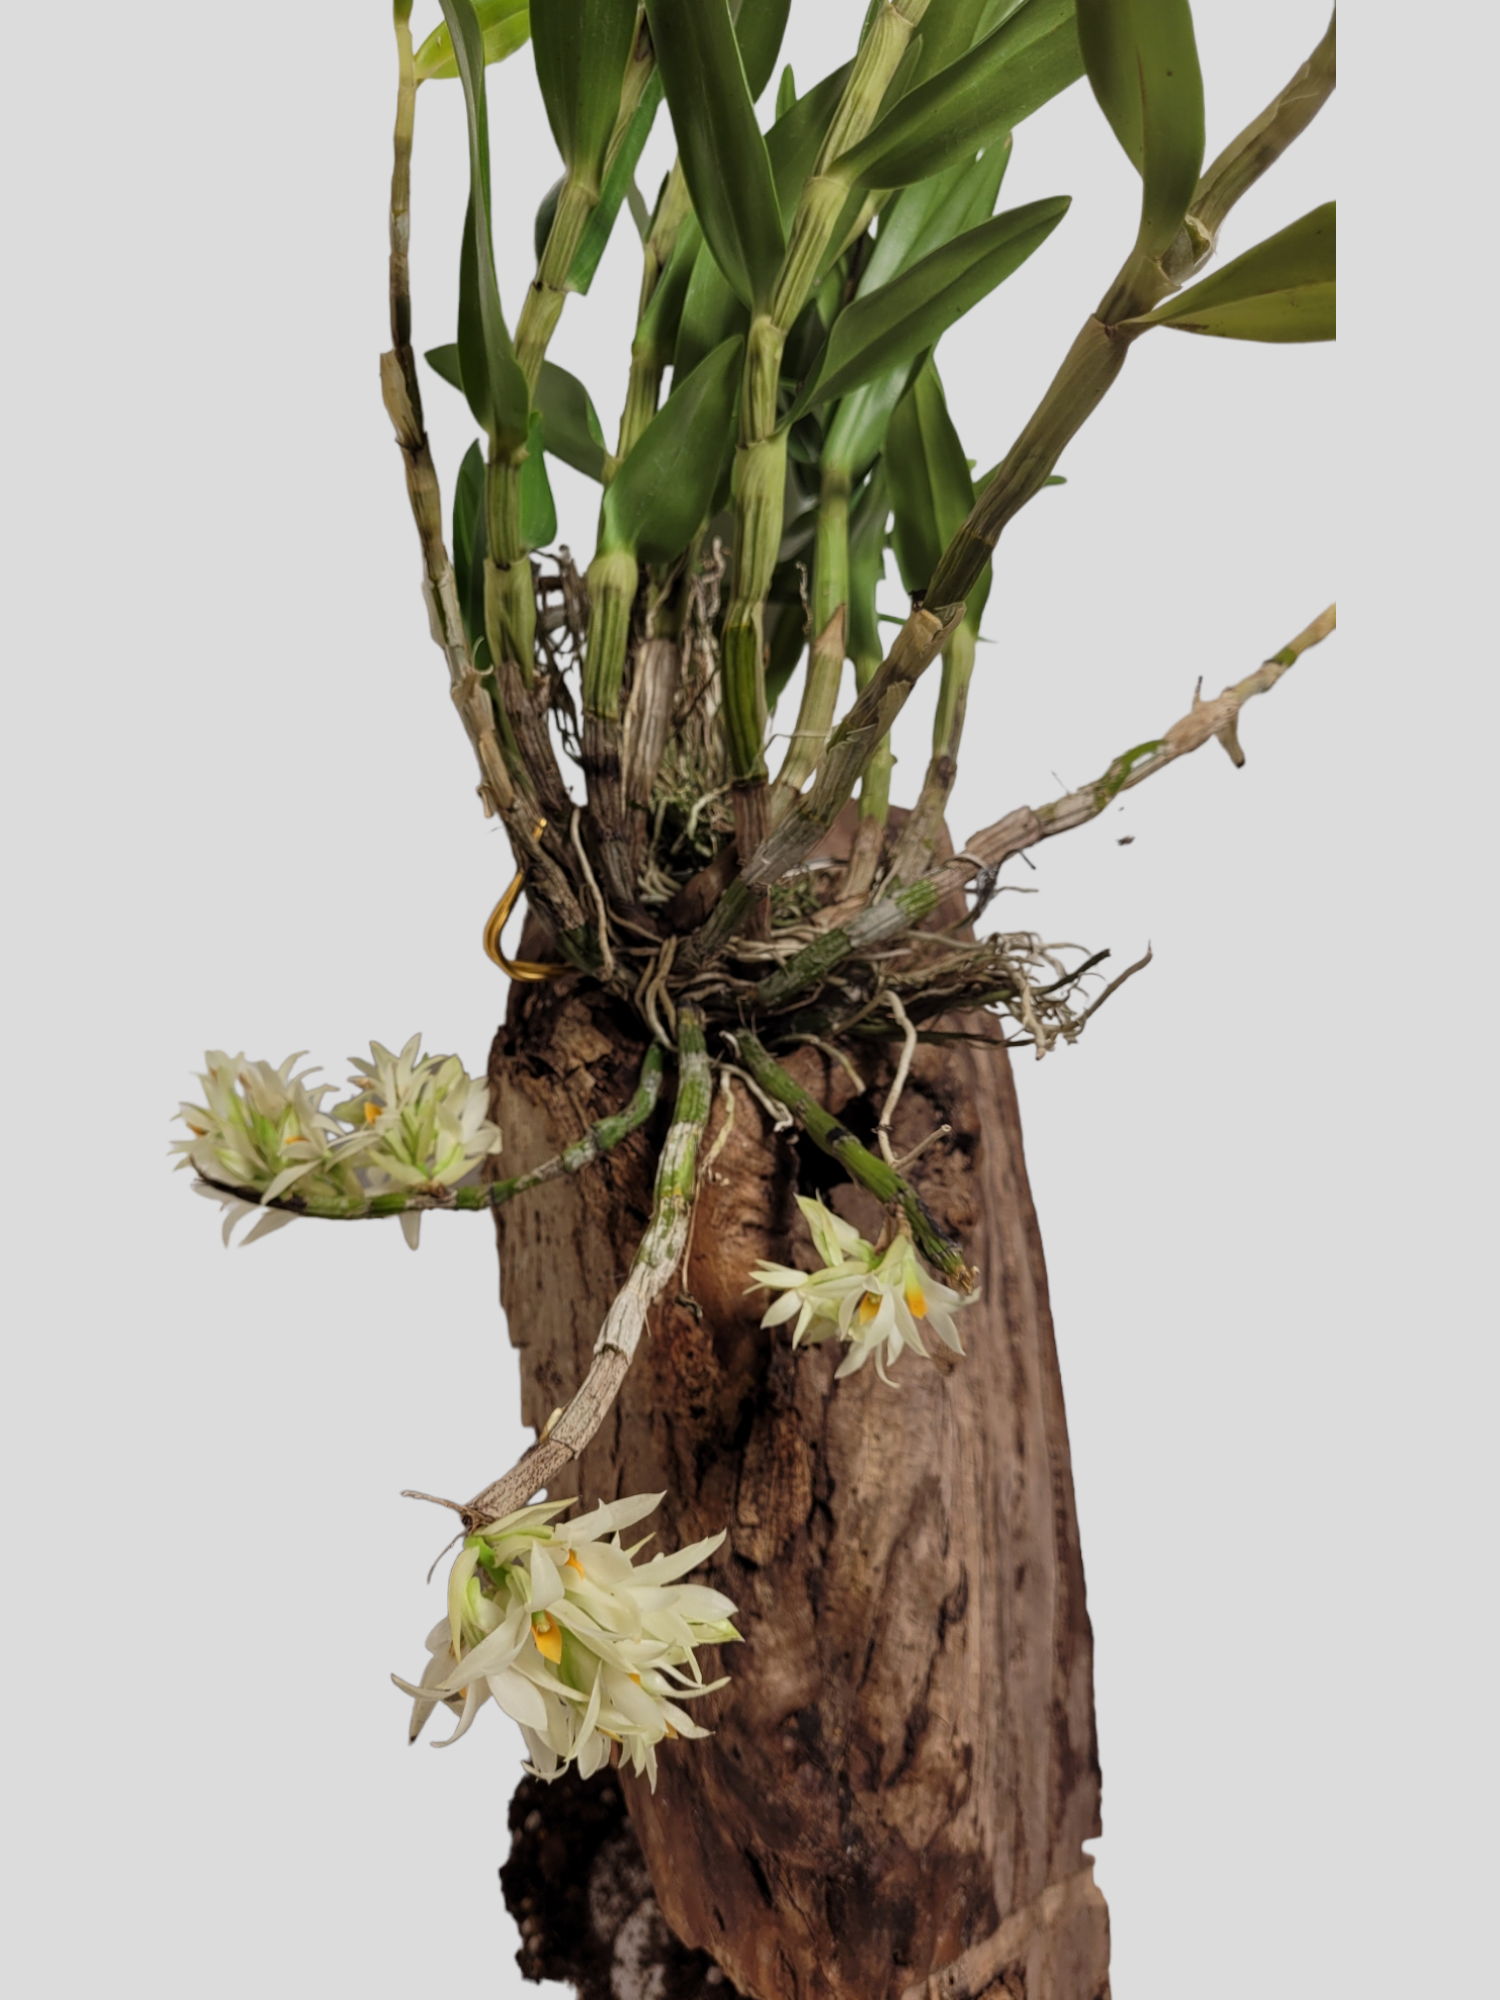 Dendrobium Bracteosum var alba